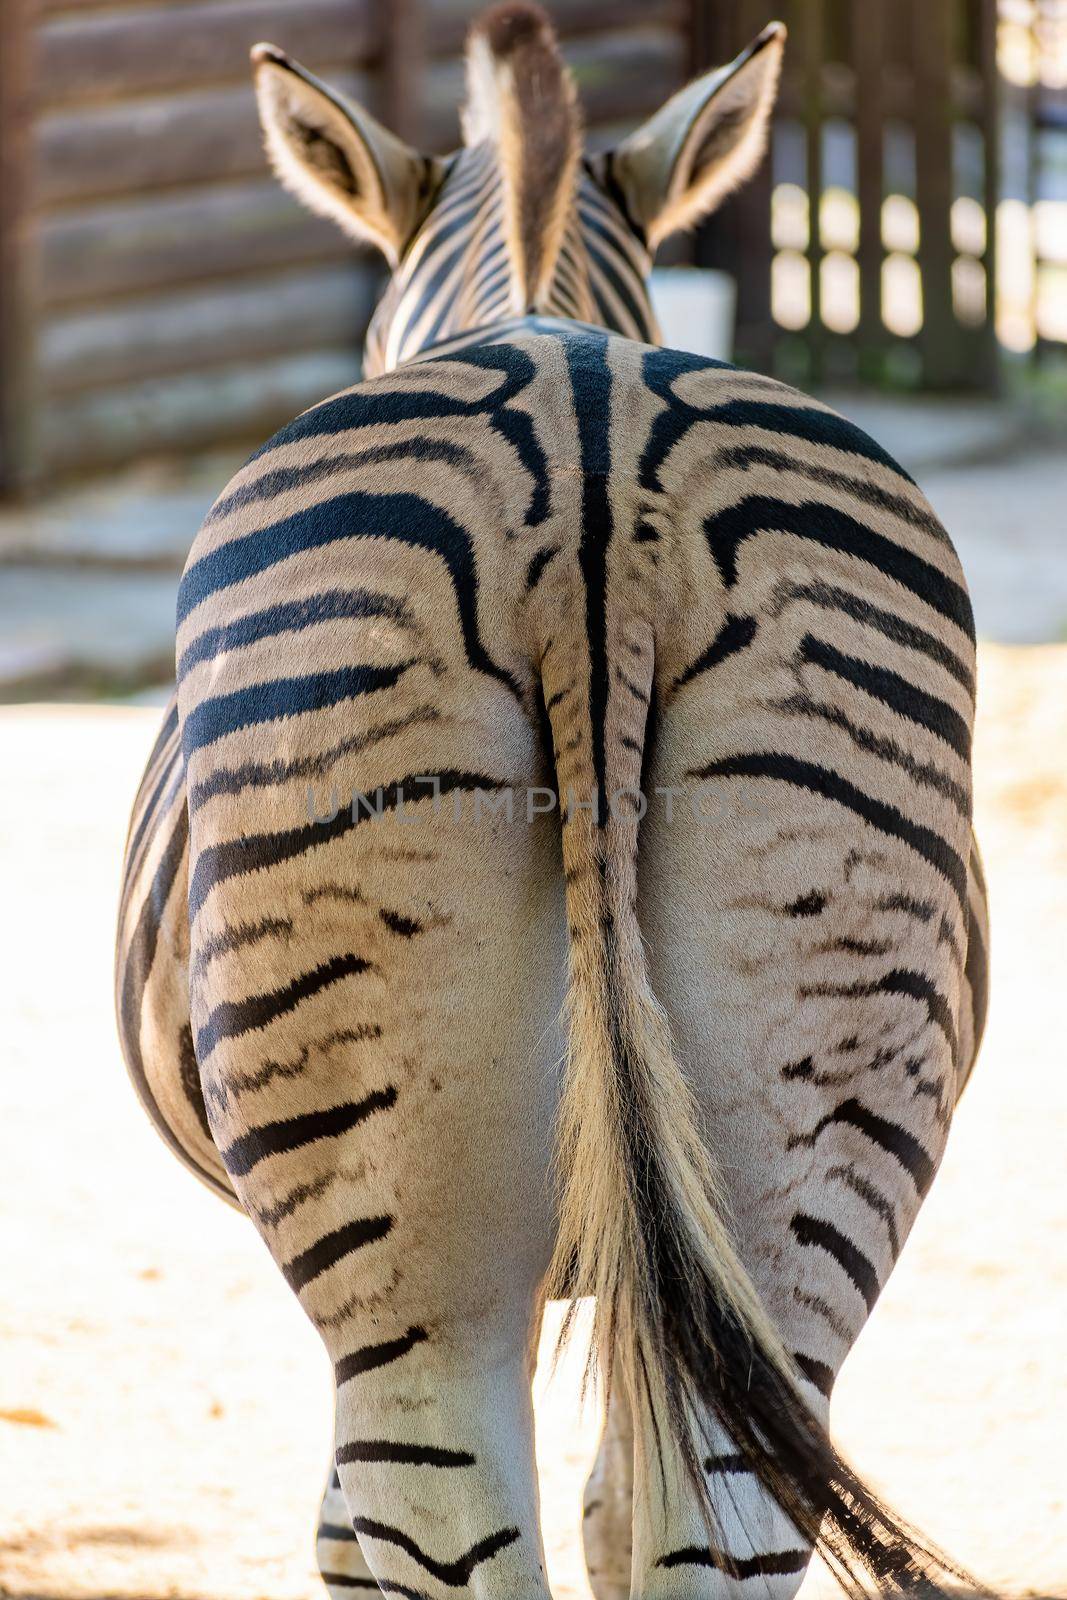 Chapman's zebra (Equus quagga chapmani) view from the back Zoo Hodonin Czech Republic, South Moravia